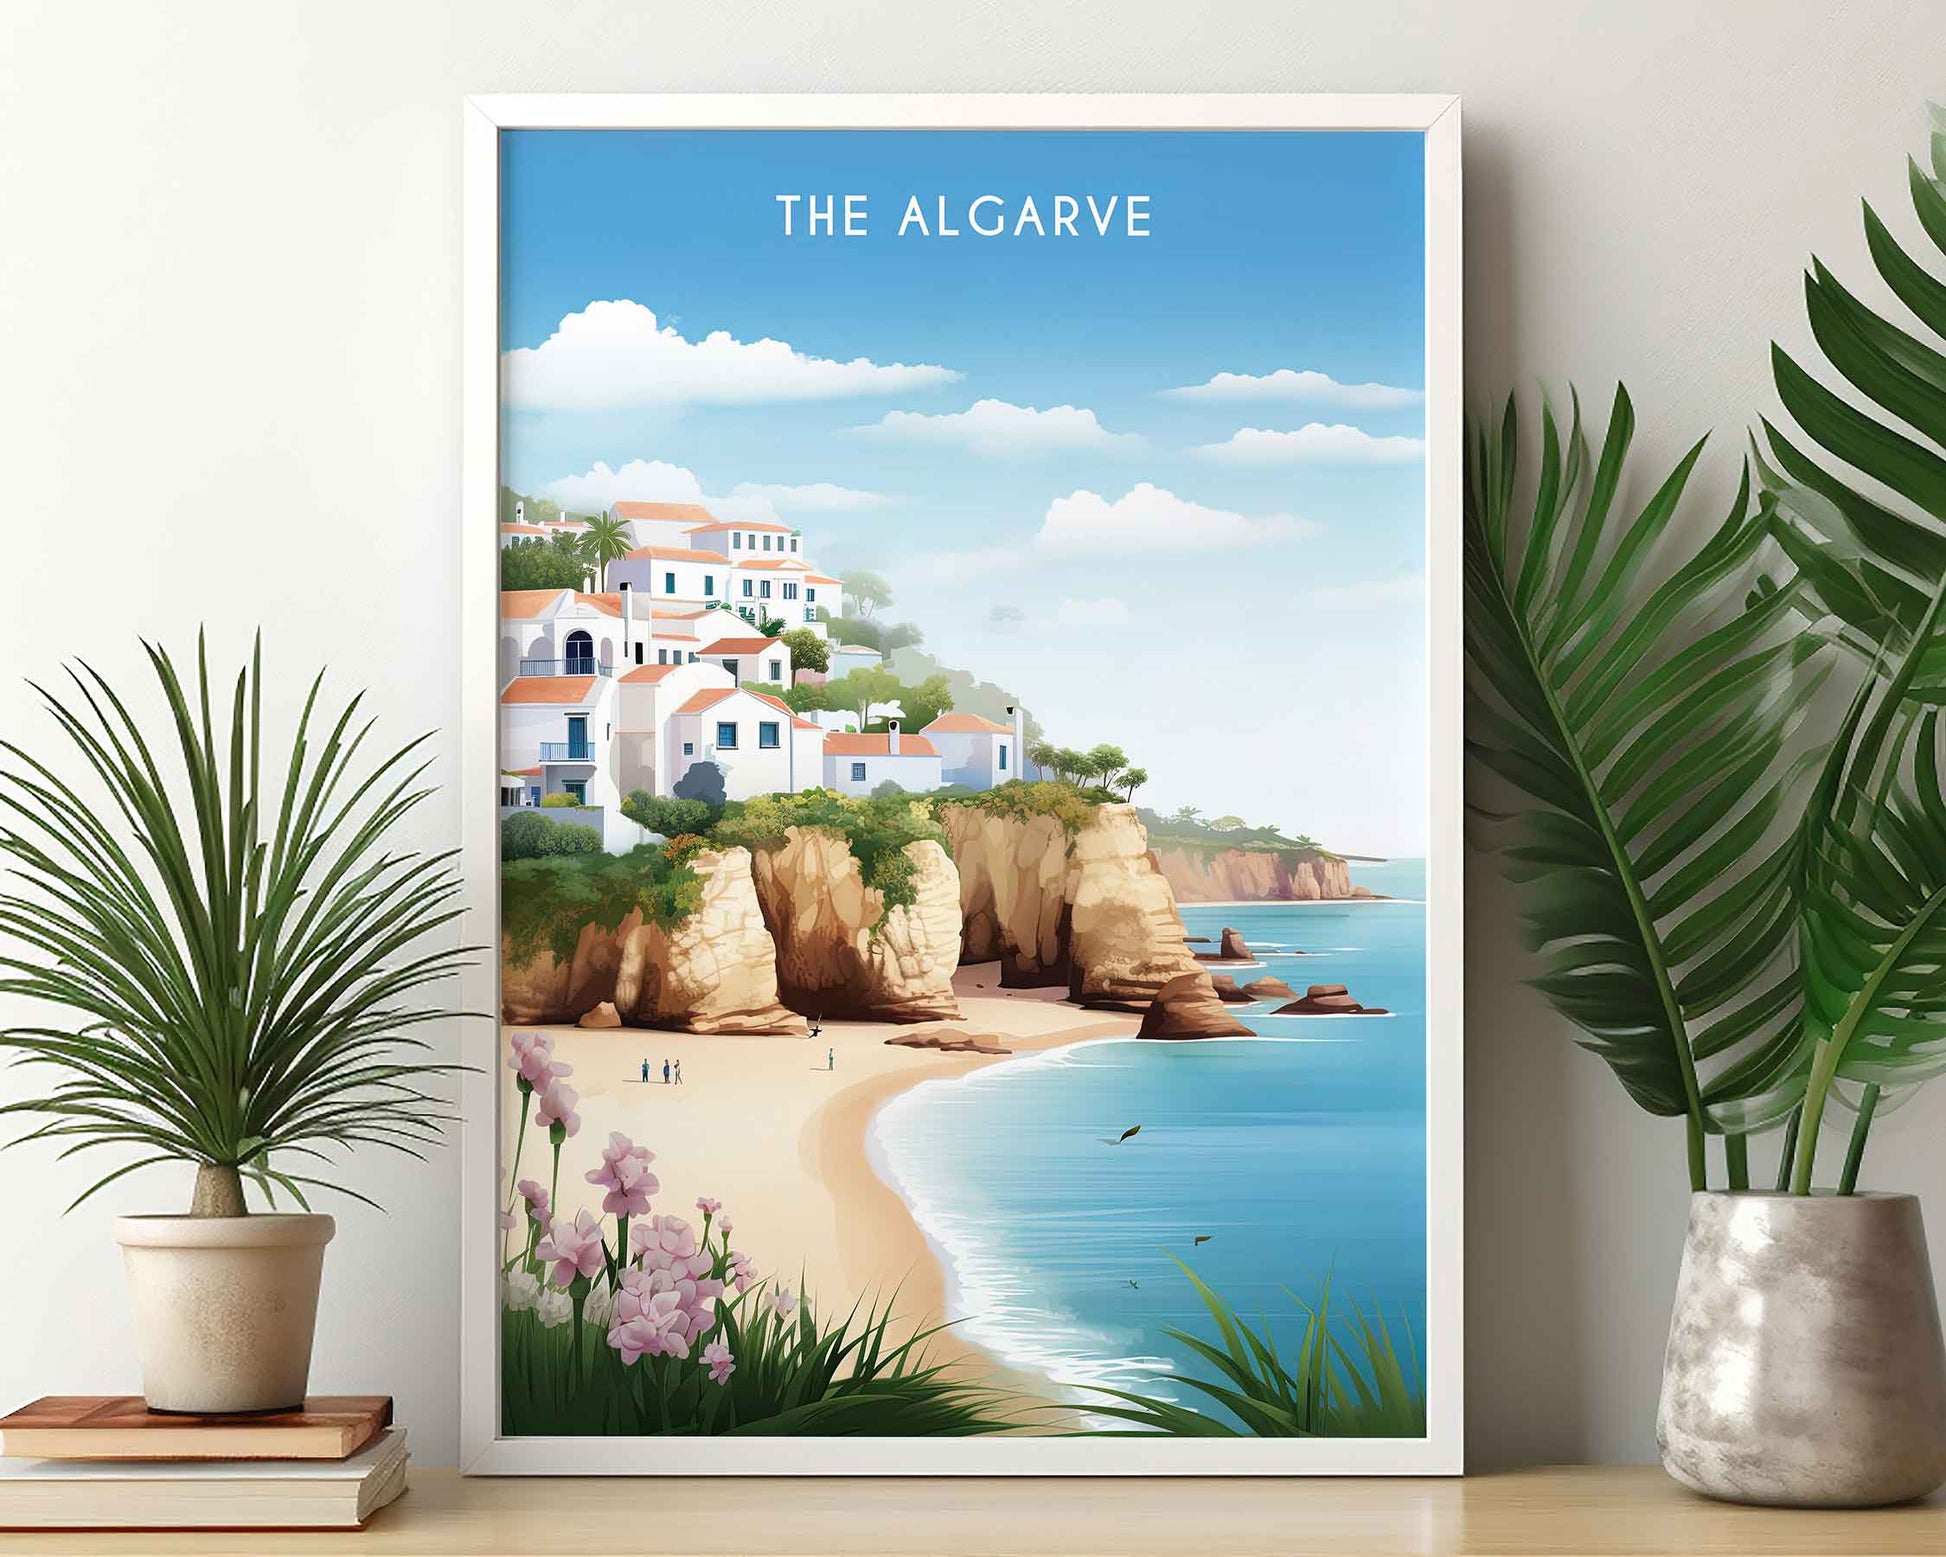 Framed Image of Algarve Portugal Travel Posters Wall Art Illustration Prints